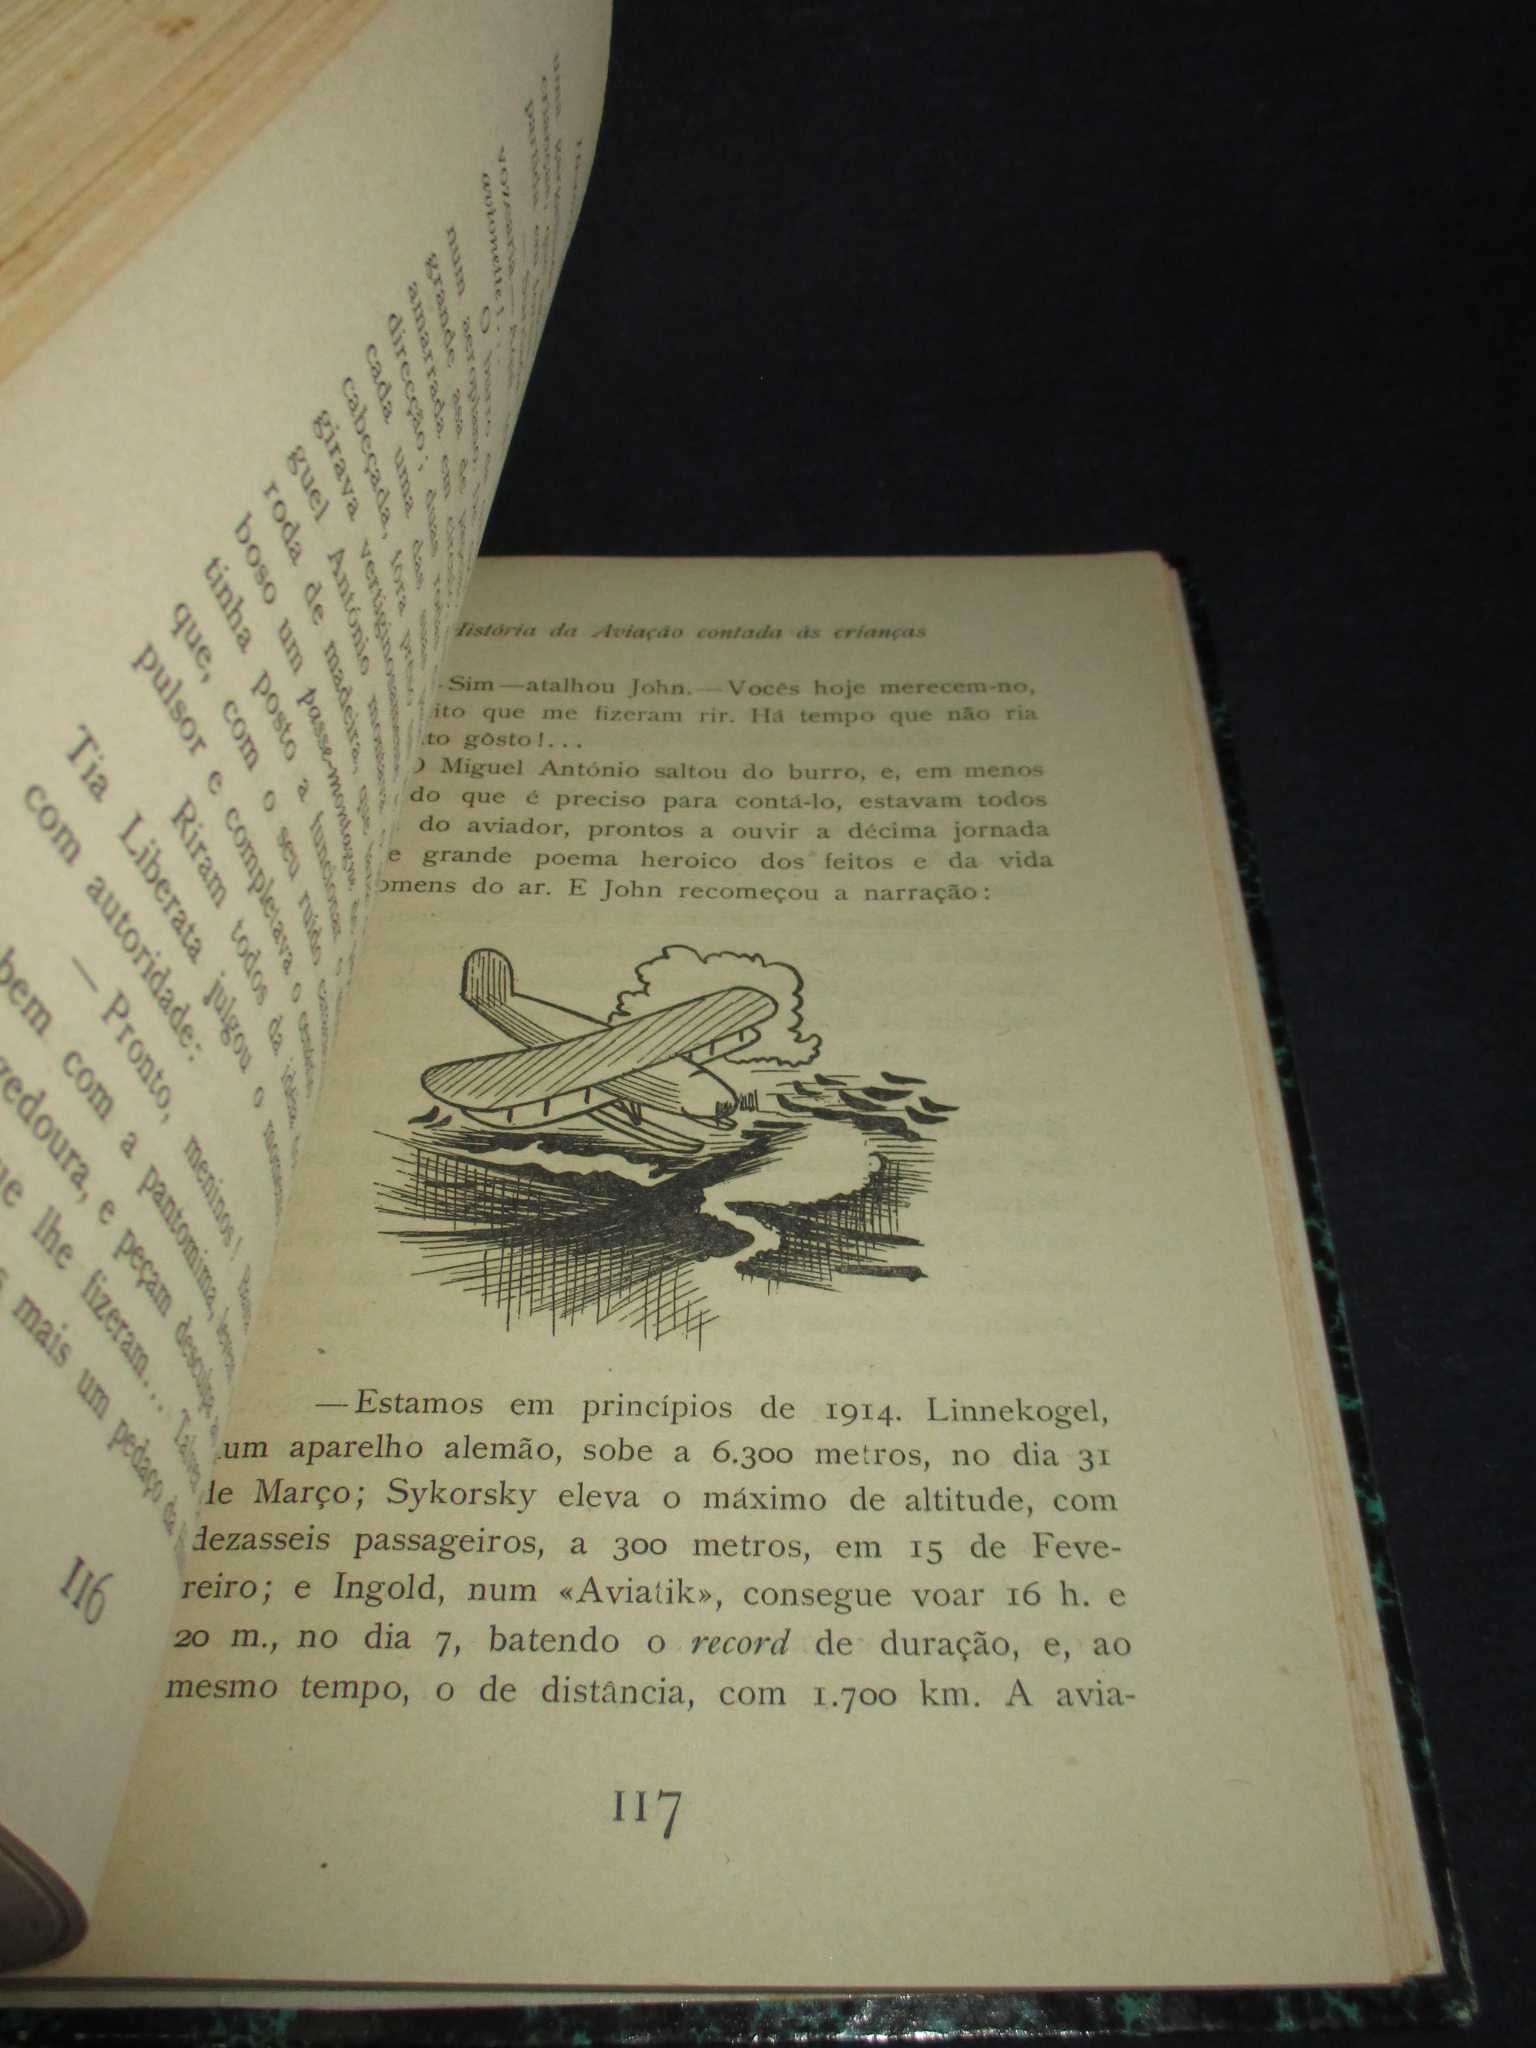 Livro História da Aviação contada às crianças Fernand'Almiro